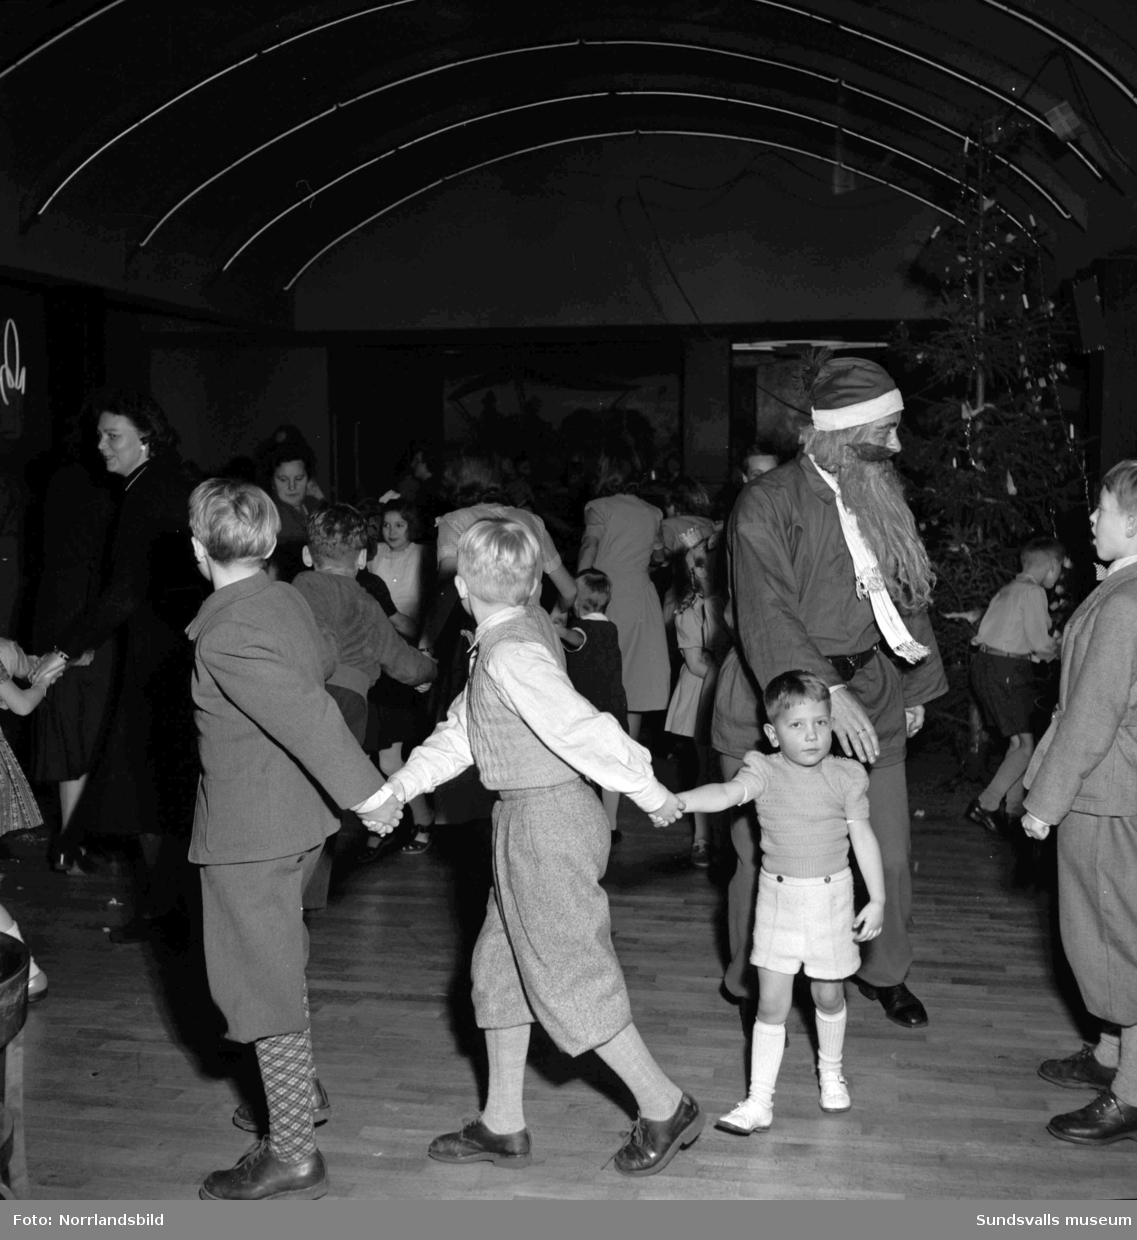 Polisens barnfest på Wivex, med långdans, fika och jultomte.